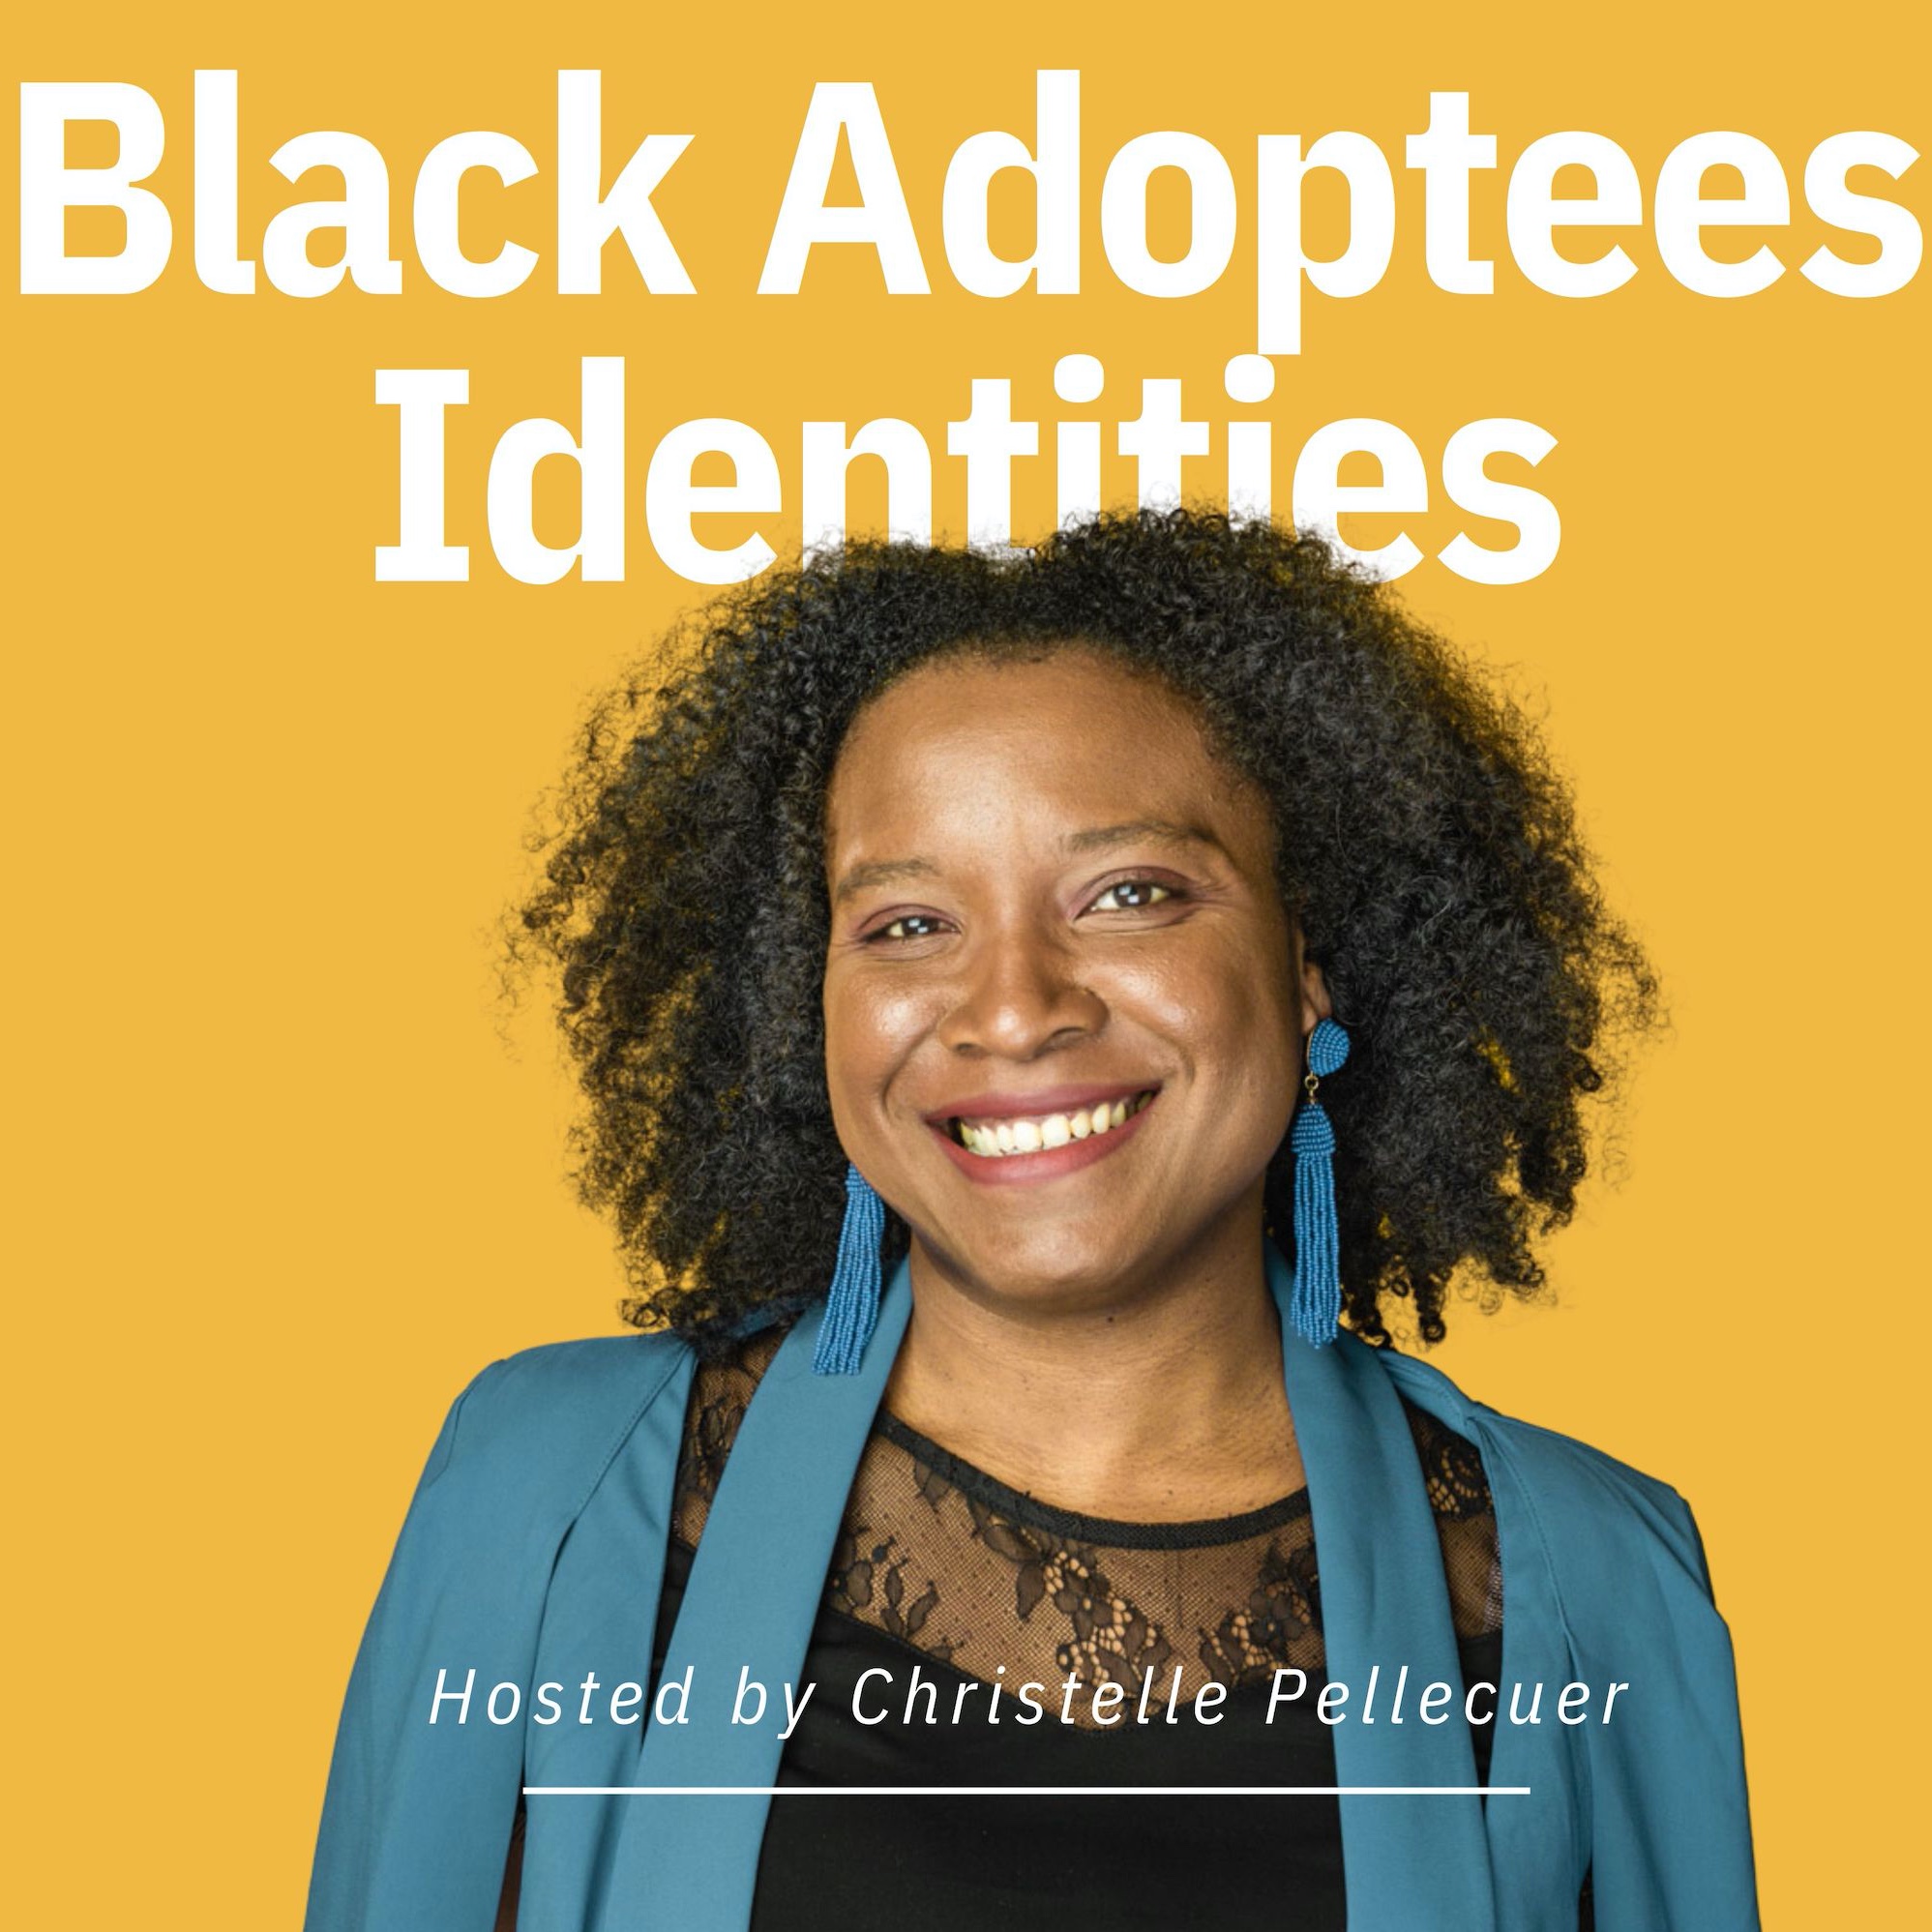 Black Adoptees Identities